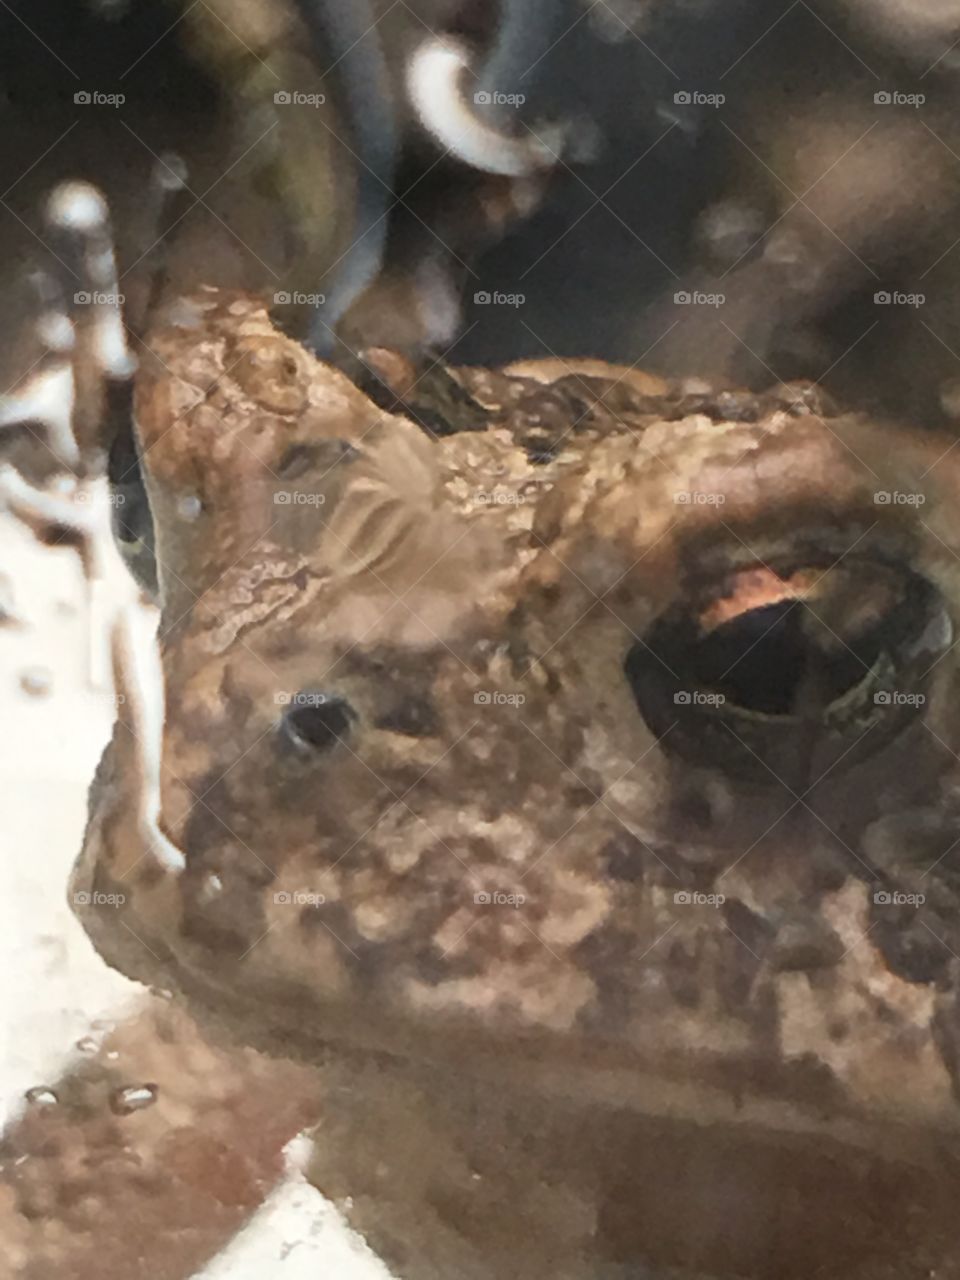 Frog eye